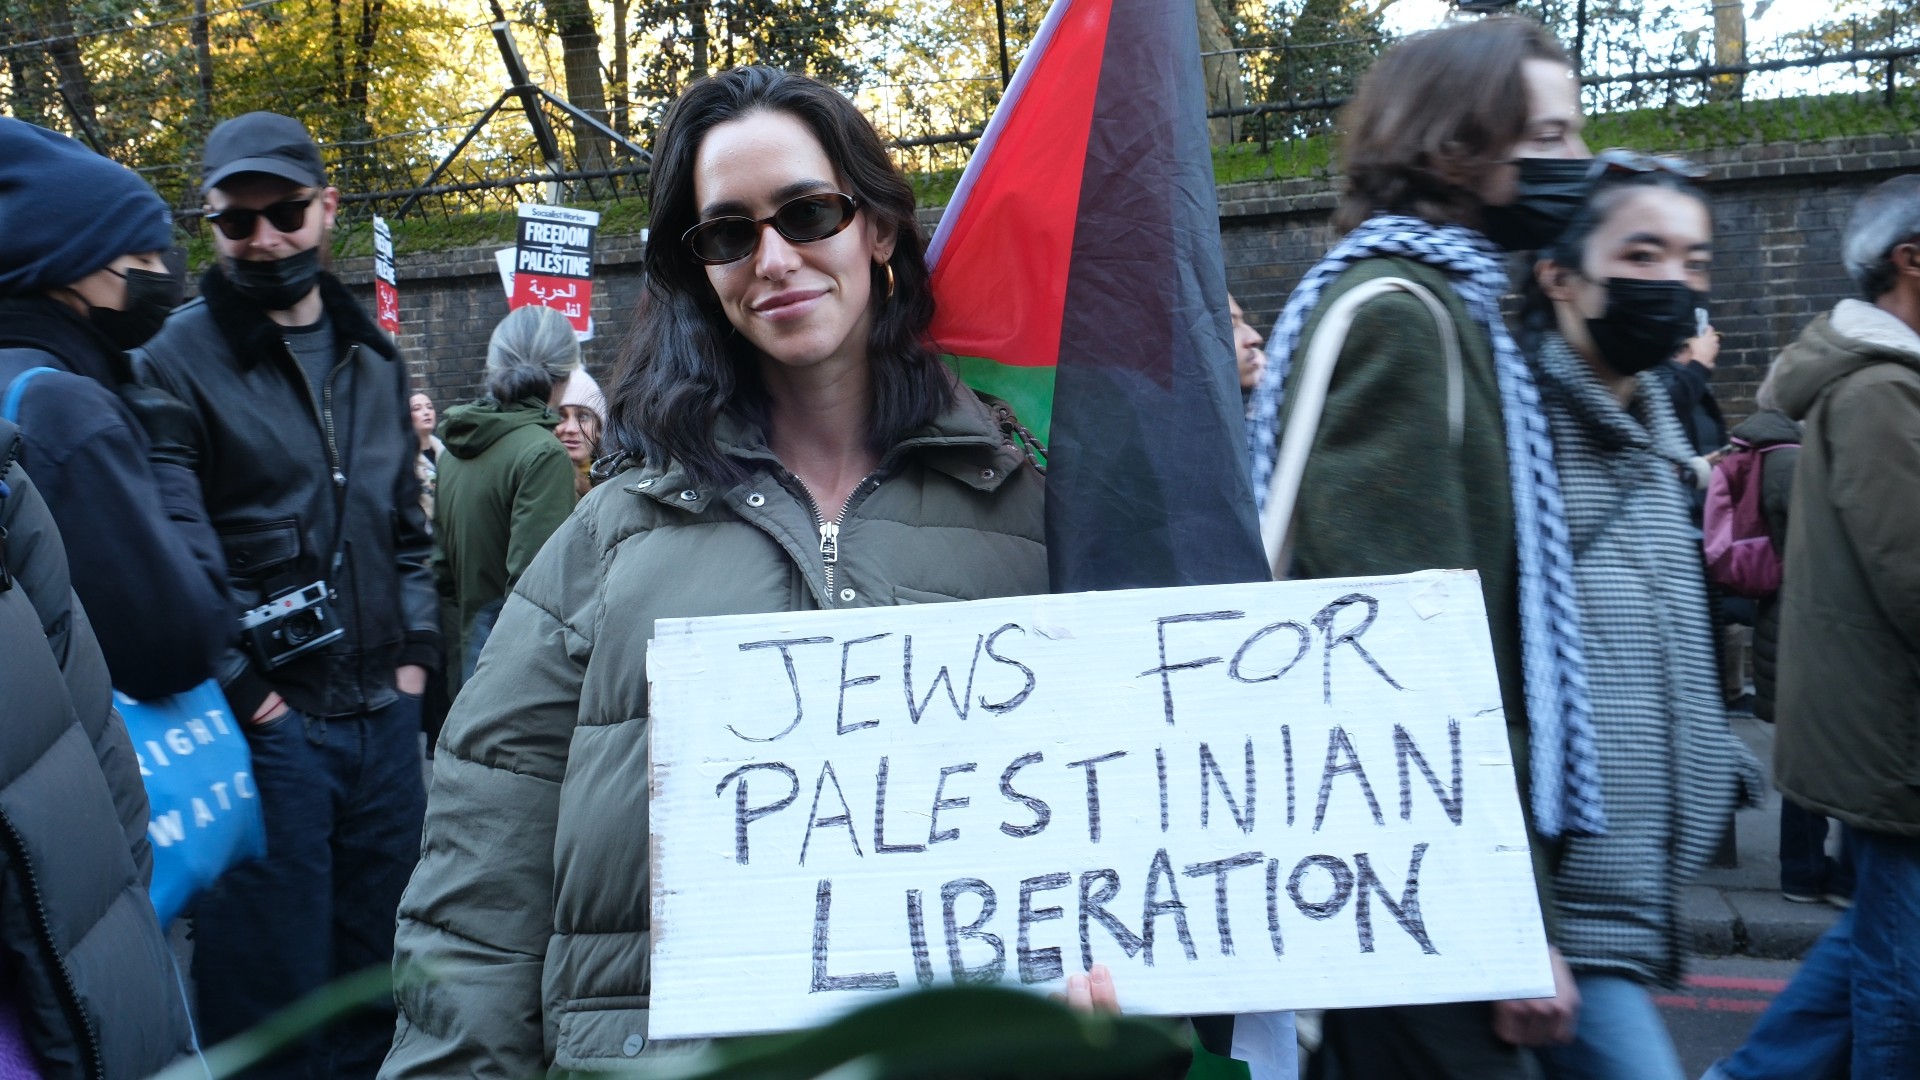 A British-Jewish woman at Saturday’s demonstration (Aina J. Khan)